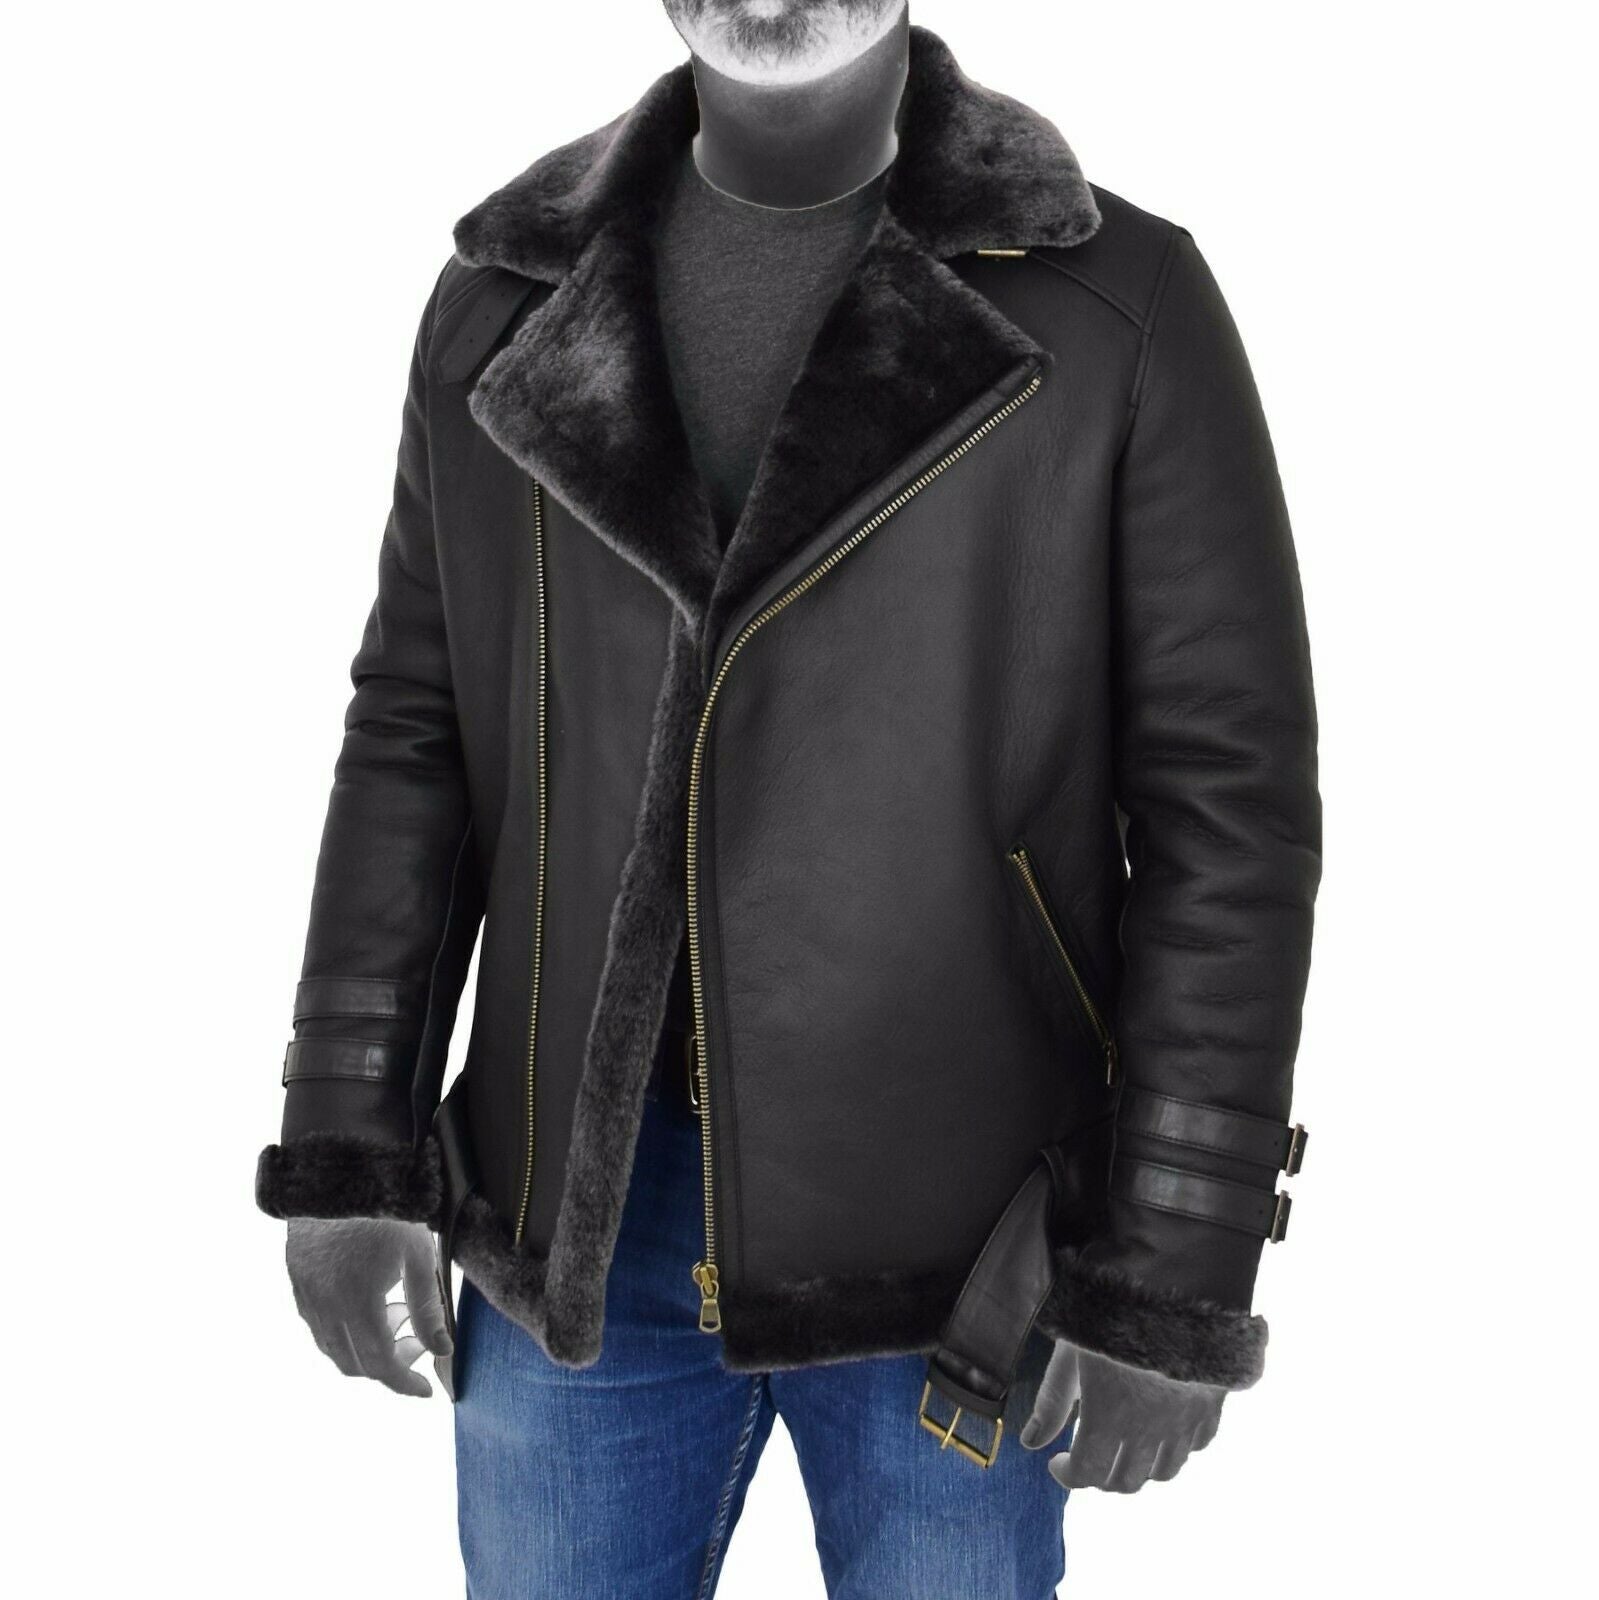 Spine Spark Men Black Brando Shearling Leather Coat Jacket